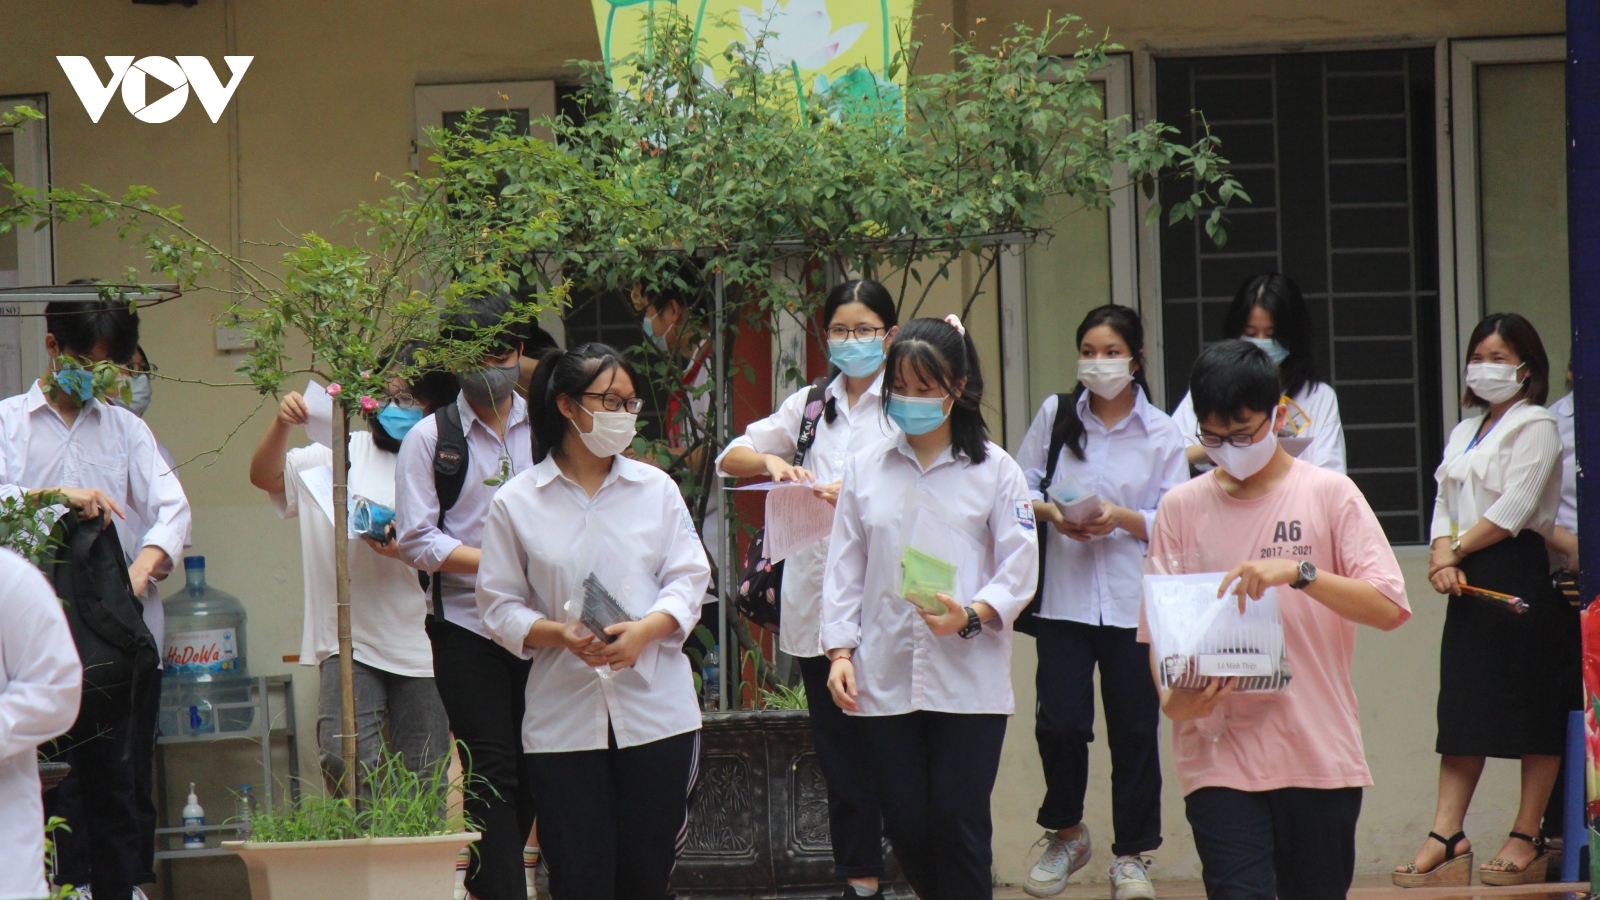 Thi vào 10 ở Hà Nội: Đề tiếng Anh nhẹ nhàng, giáo viên dự báo sẽ nhiều điểm 9, 10